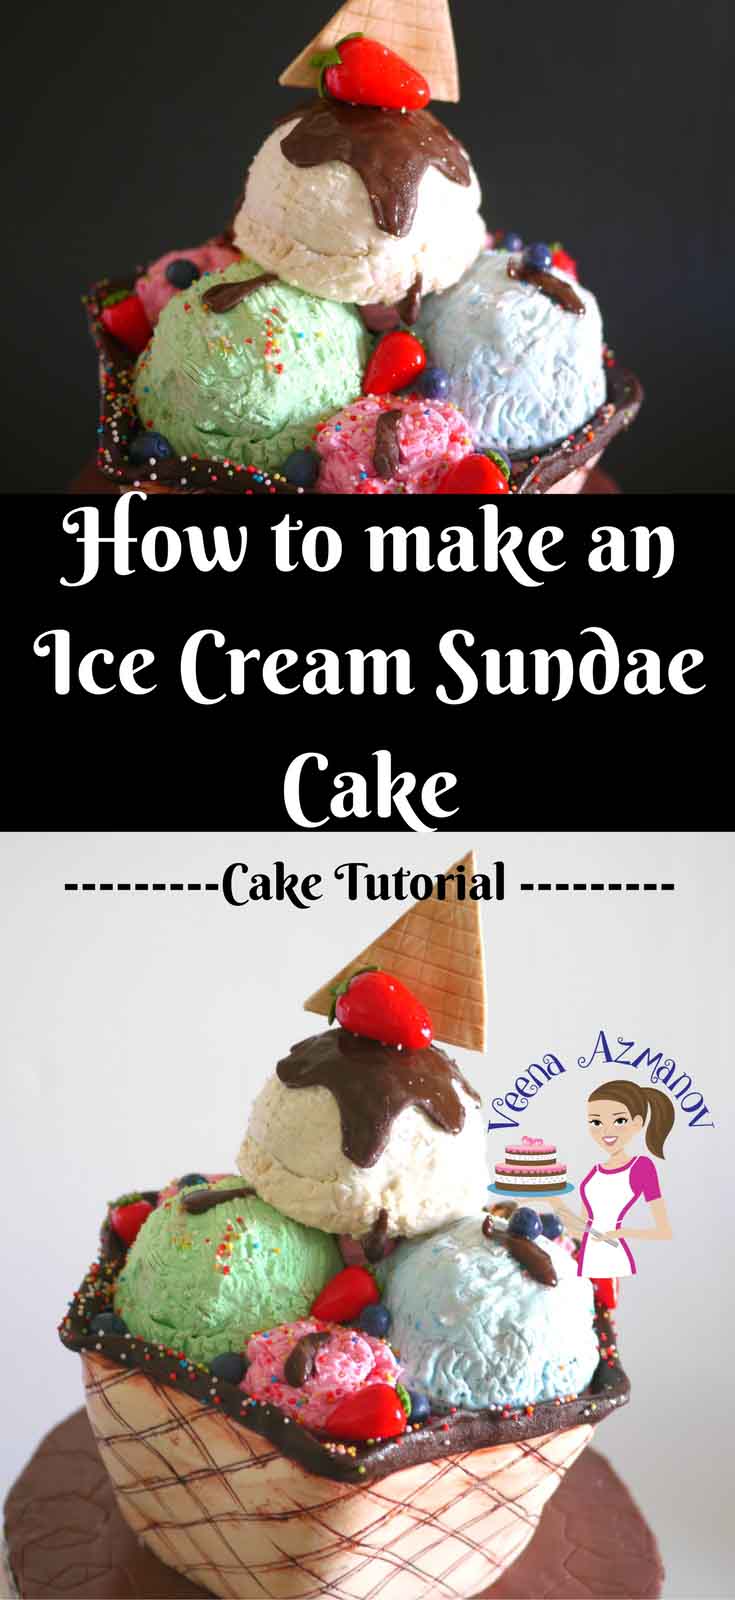 A cake decorated like a big ice cream sundae.